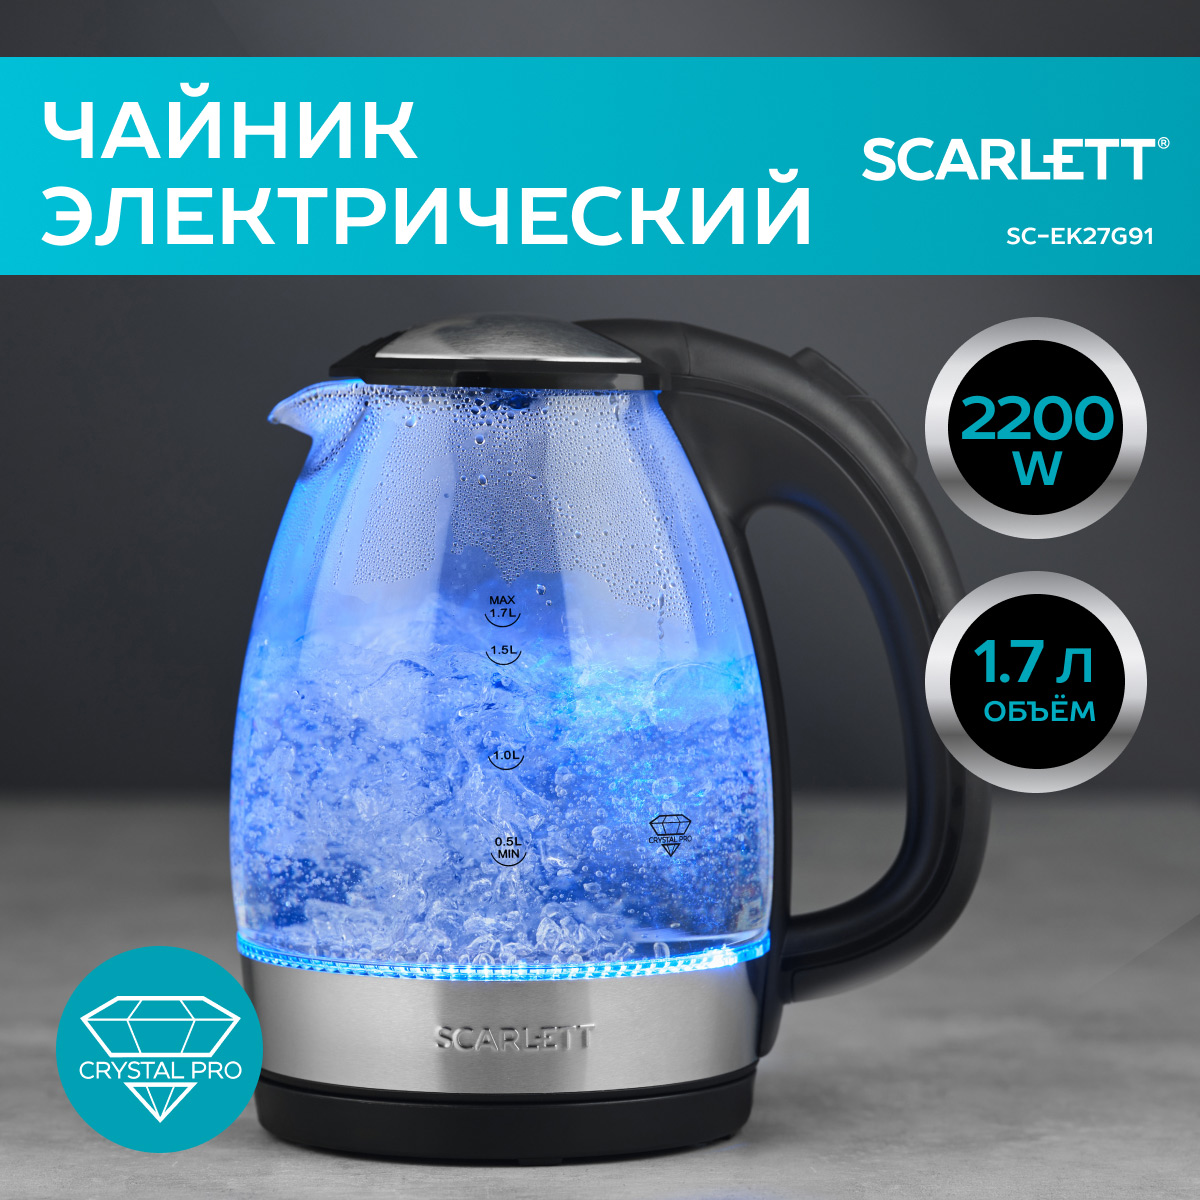 Чайник электрический Scarlett SC-EK27G91 1.7 л серебристый, прозрачный, черный